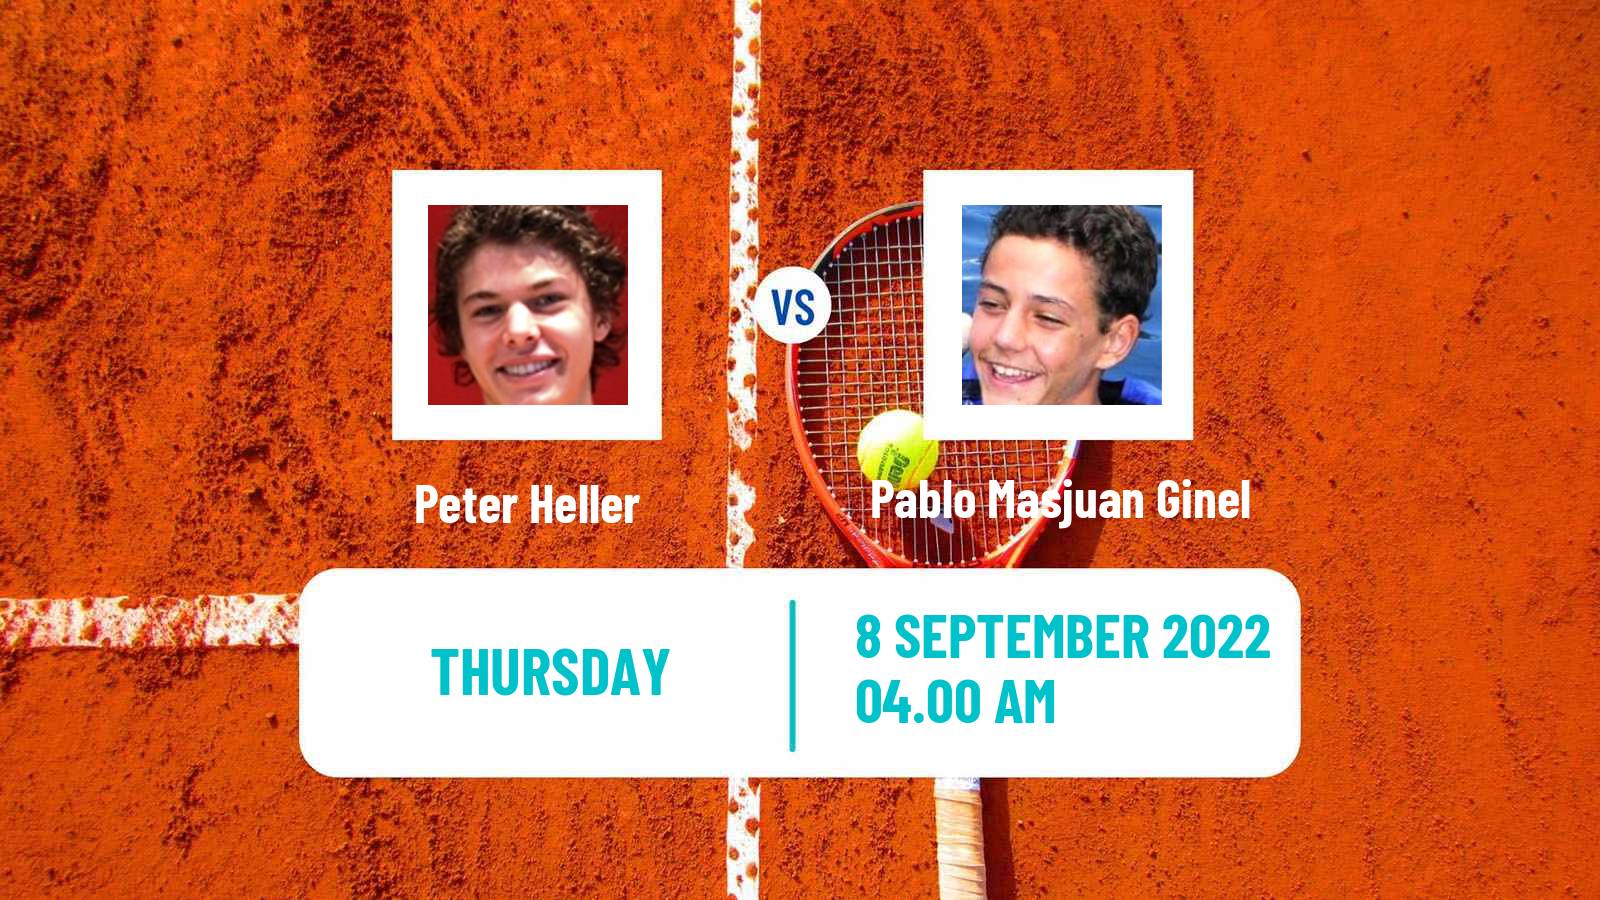 Tennis ITF Tournaments Peter Heller - Pablo Masjuan Ginel